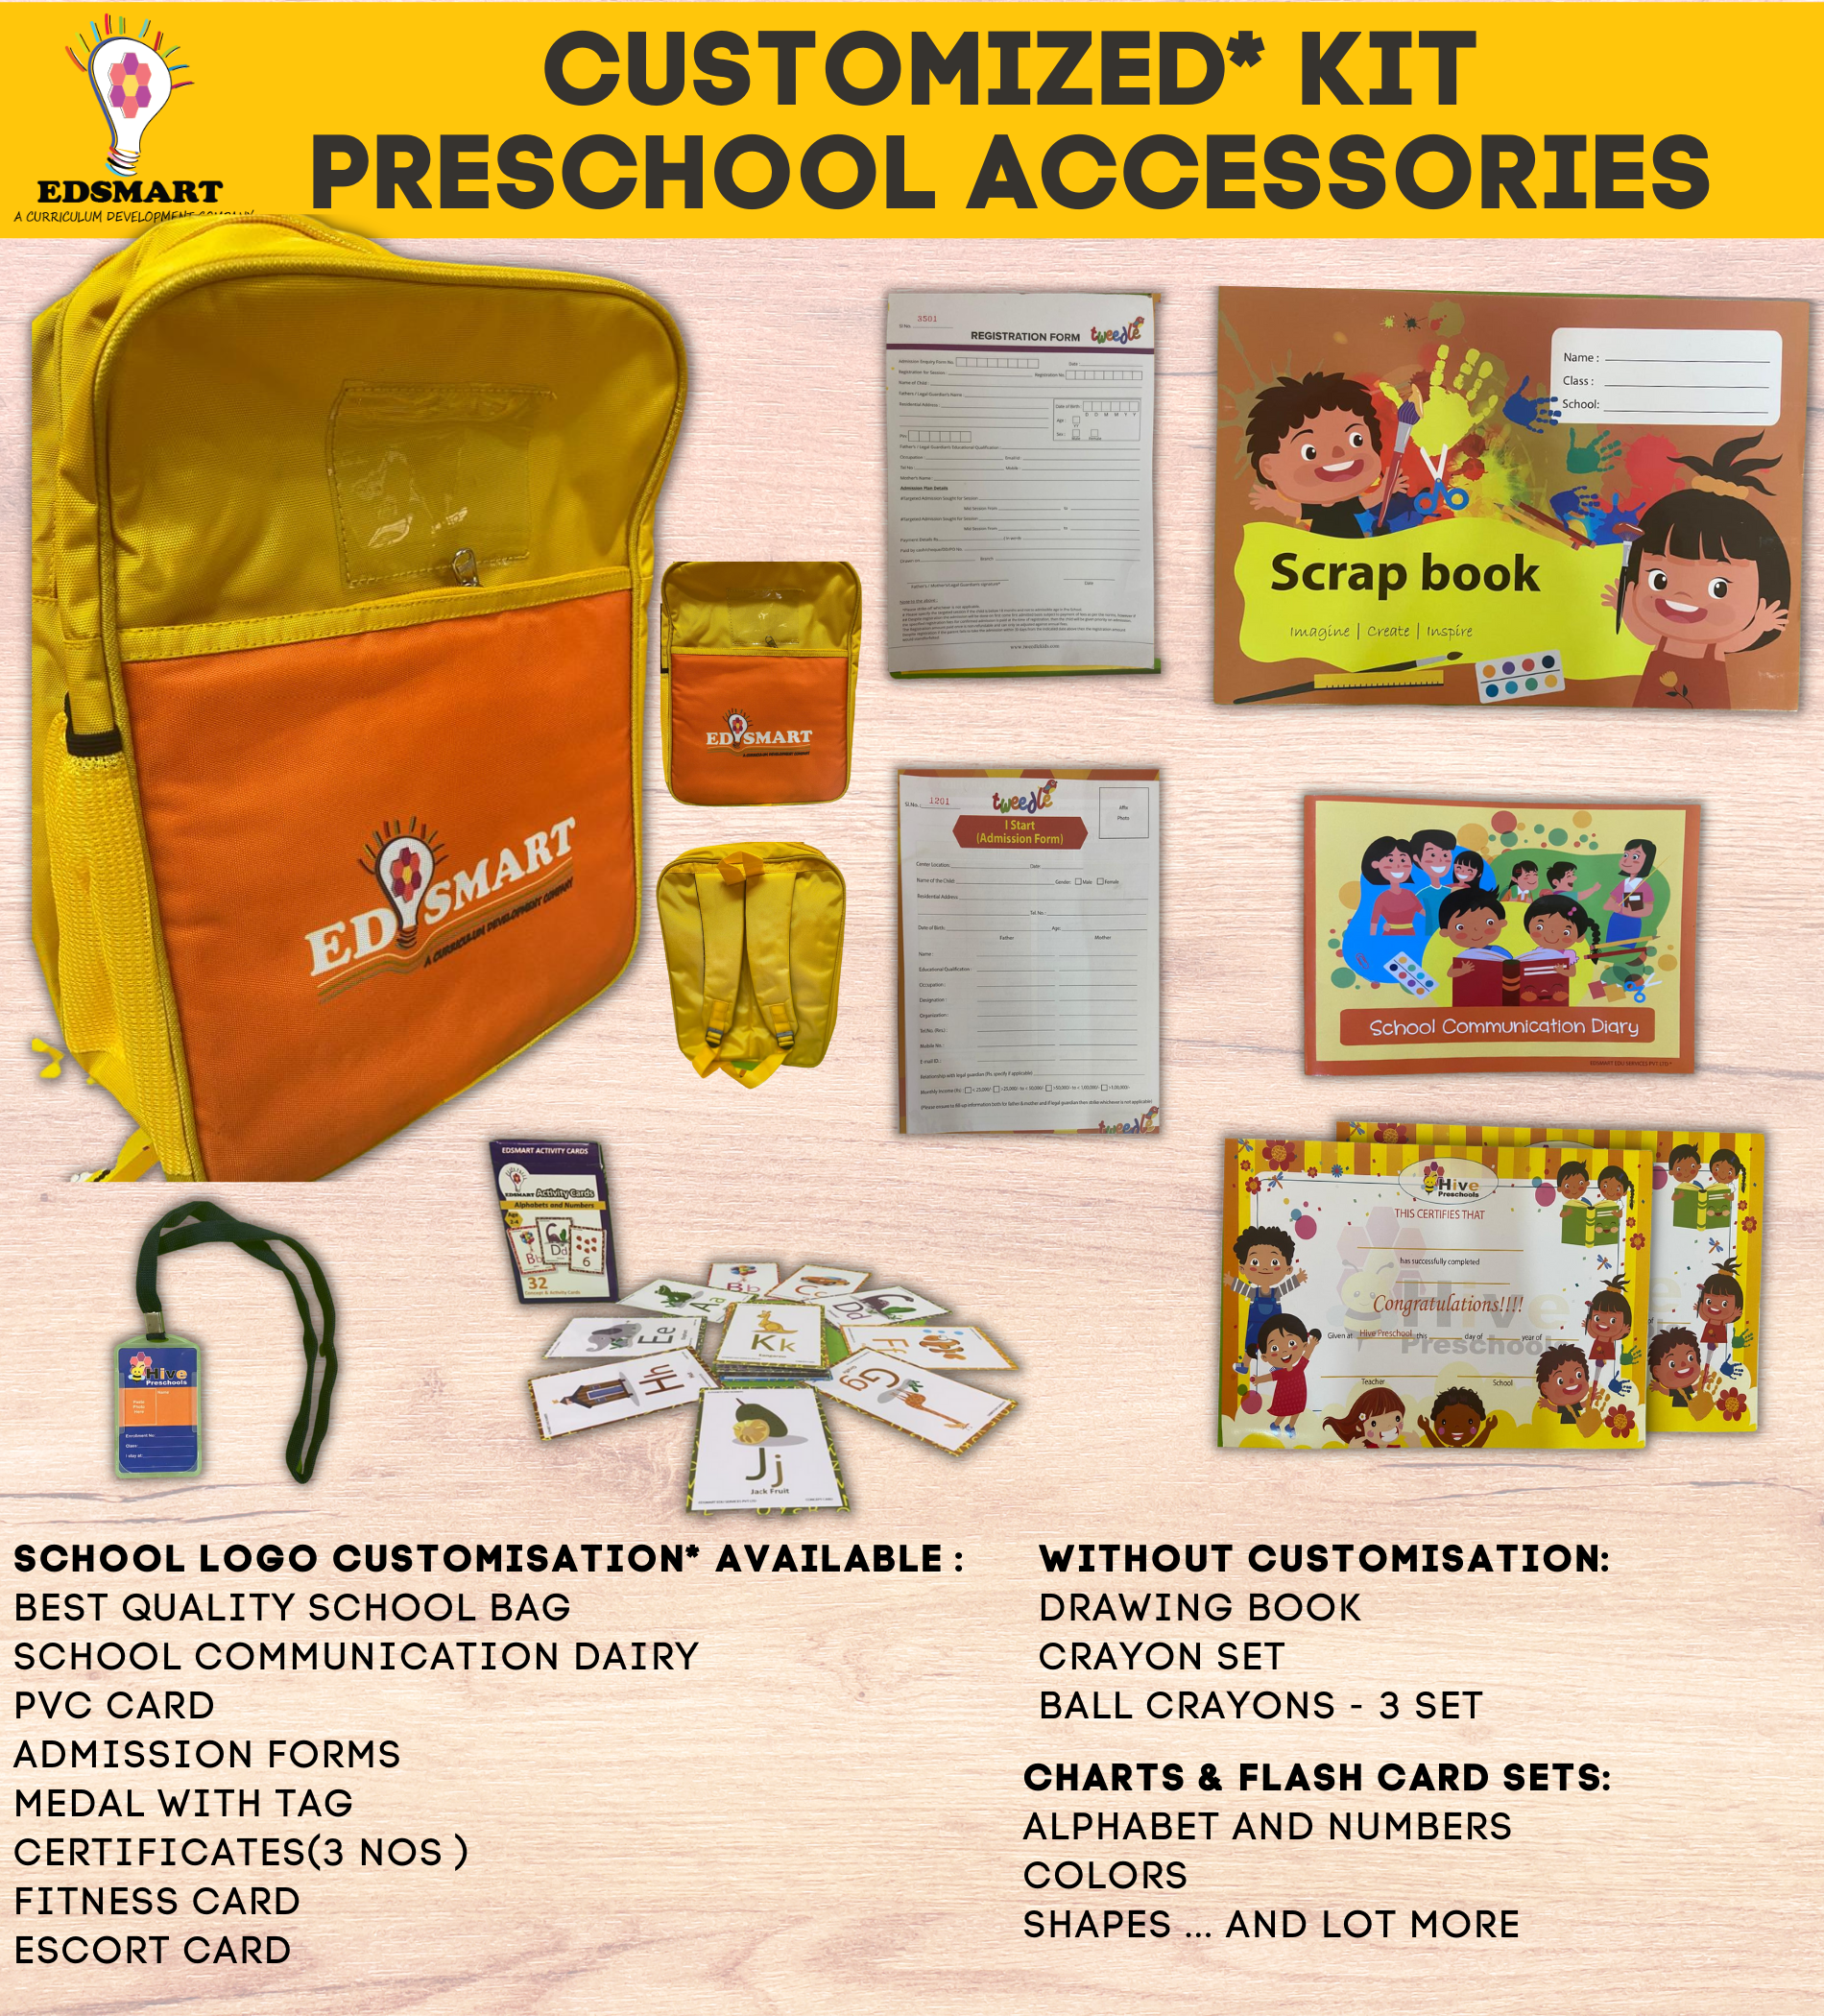 Junior KG LKG Premium School Kit